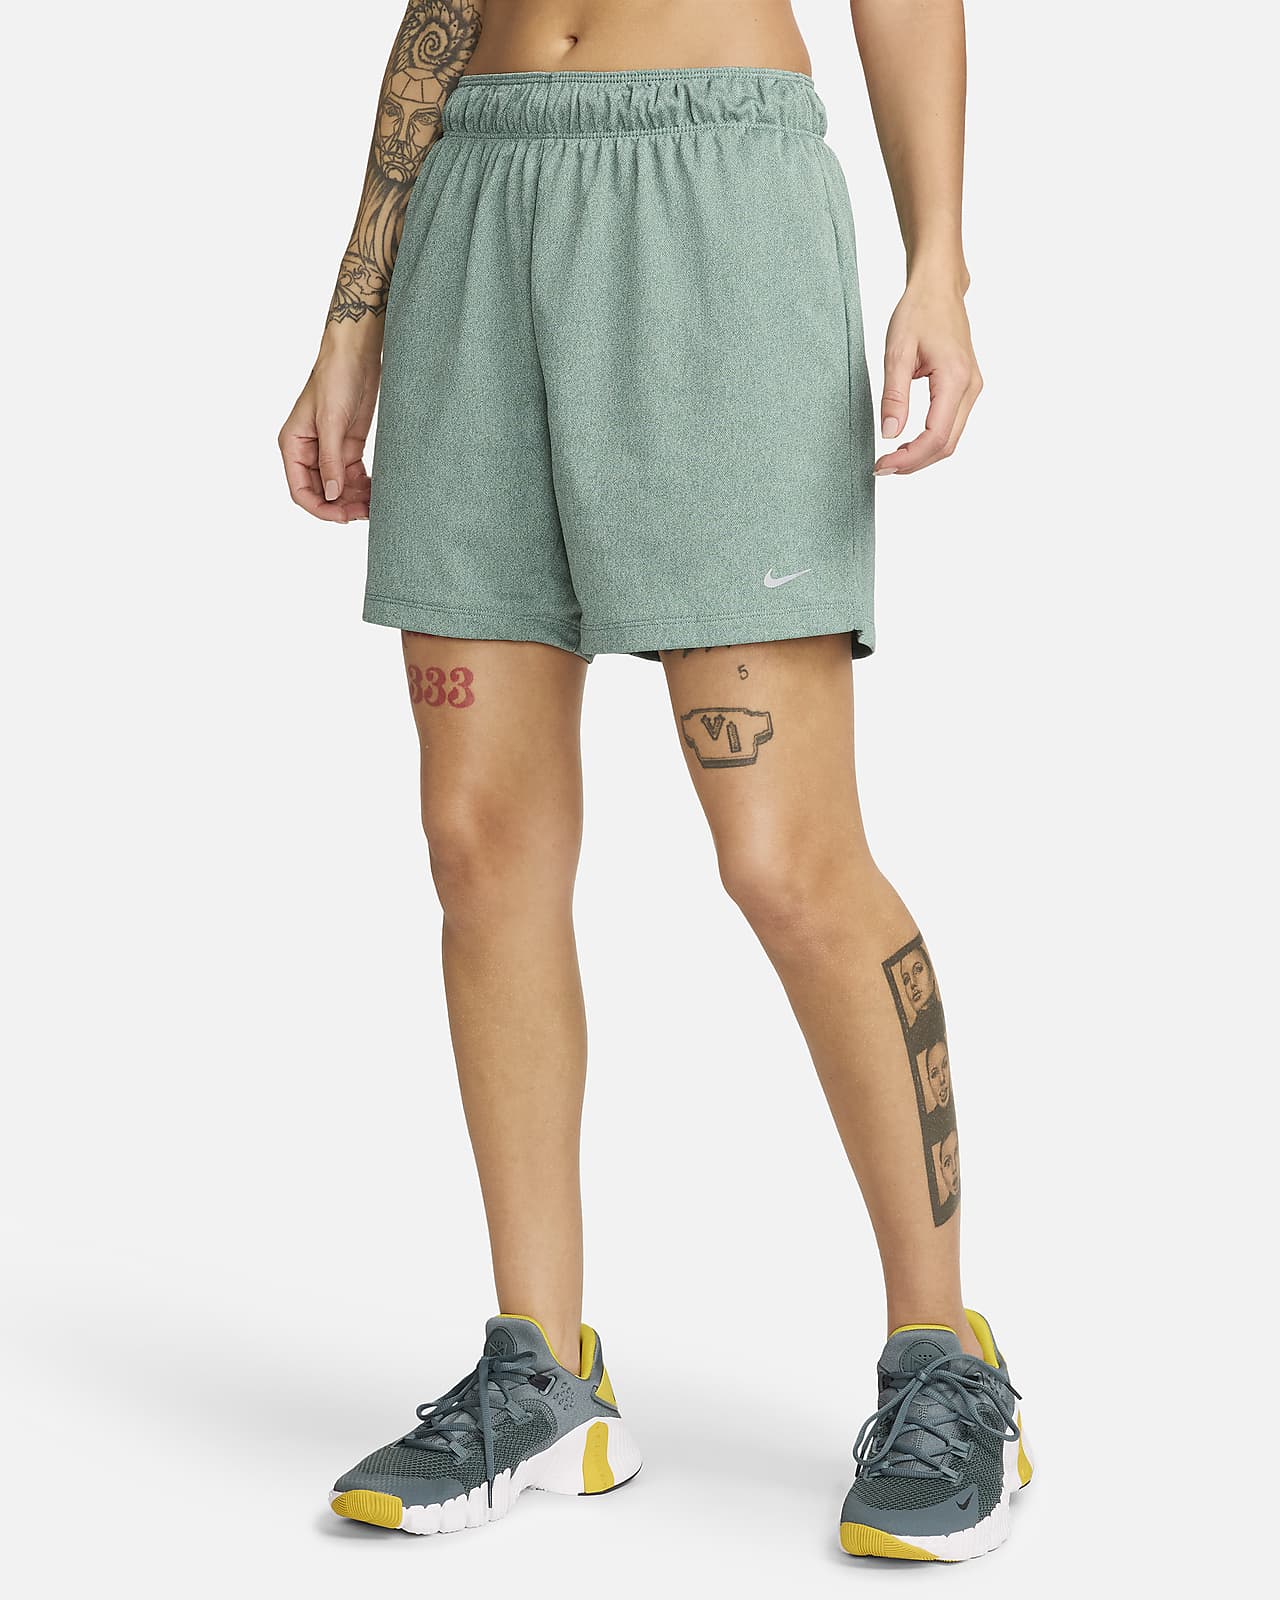 Nike Attack Dri-FIT Fitness-Shorts ohne Futter mit mittelhohem Bund für Damen (ca. 12,5 cm)